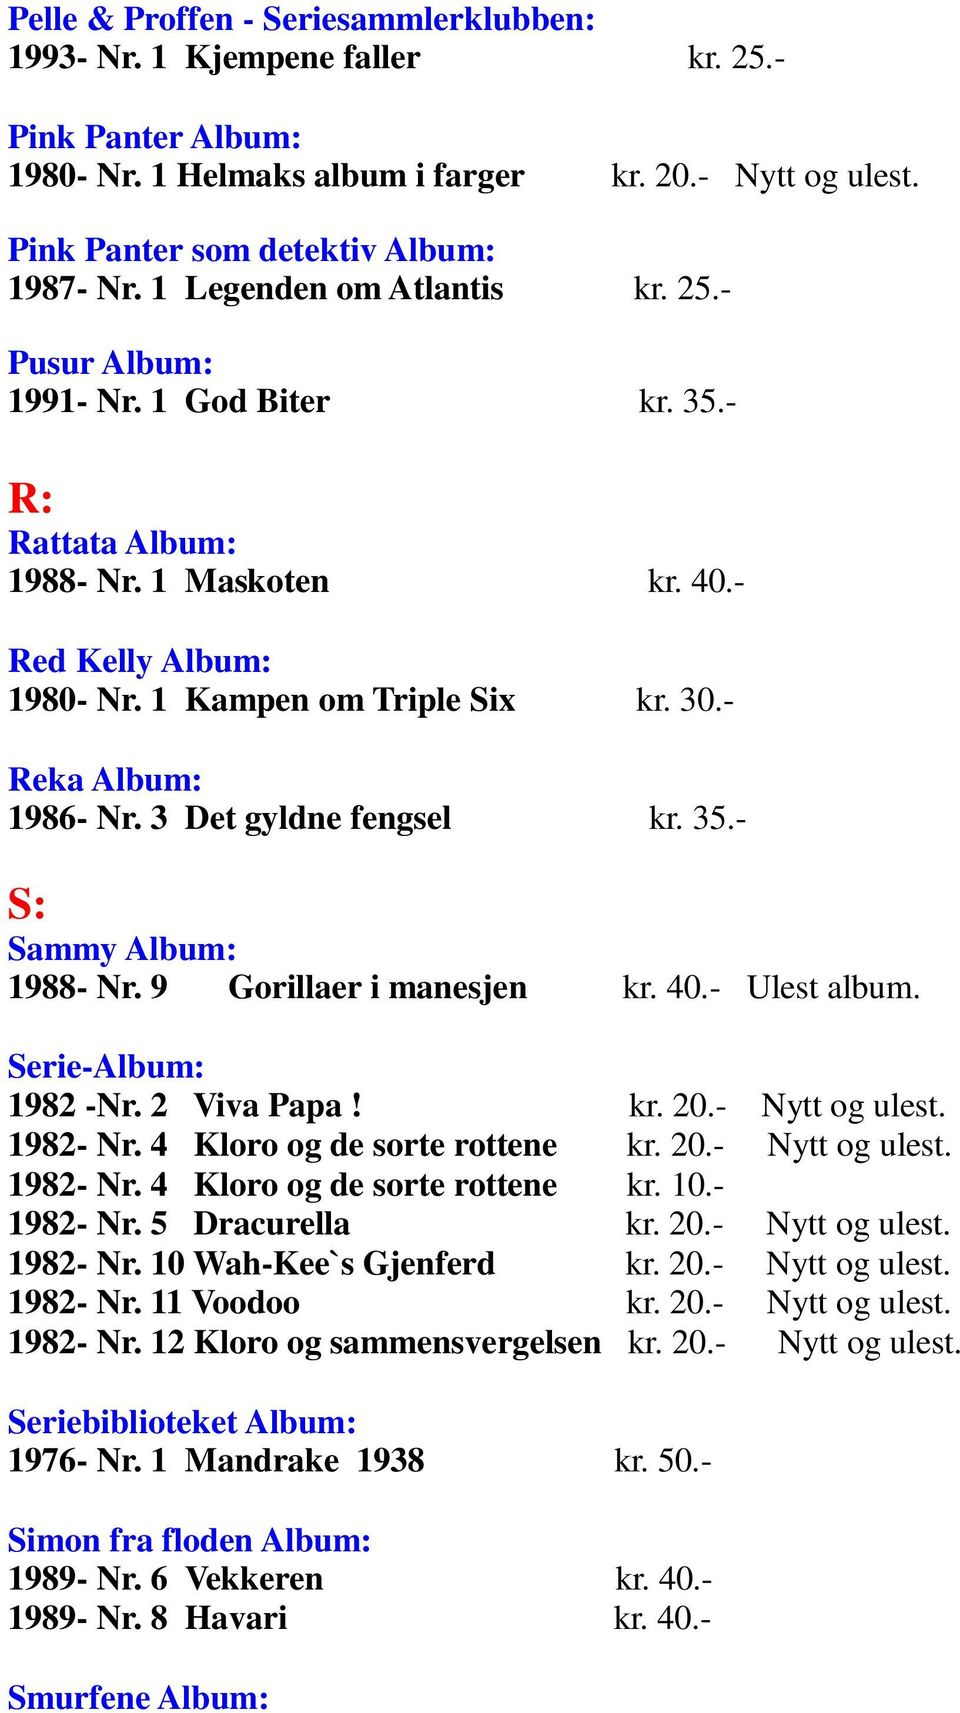 - Reka Album: 1986- Nr. 3 Det gyldne fengsel kr. 35.- S: Sammy Album: 1988- Nr. 9 Gorillaer i manesjen kr. 40.- Ulest album. Serie-Album: 1982 -Nr. 2 Viva Papa! kr. 20.- Nytt og ulest. 1982- Nr.